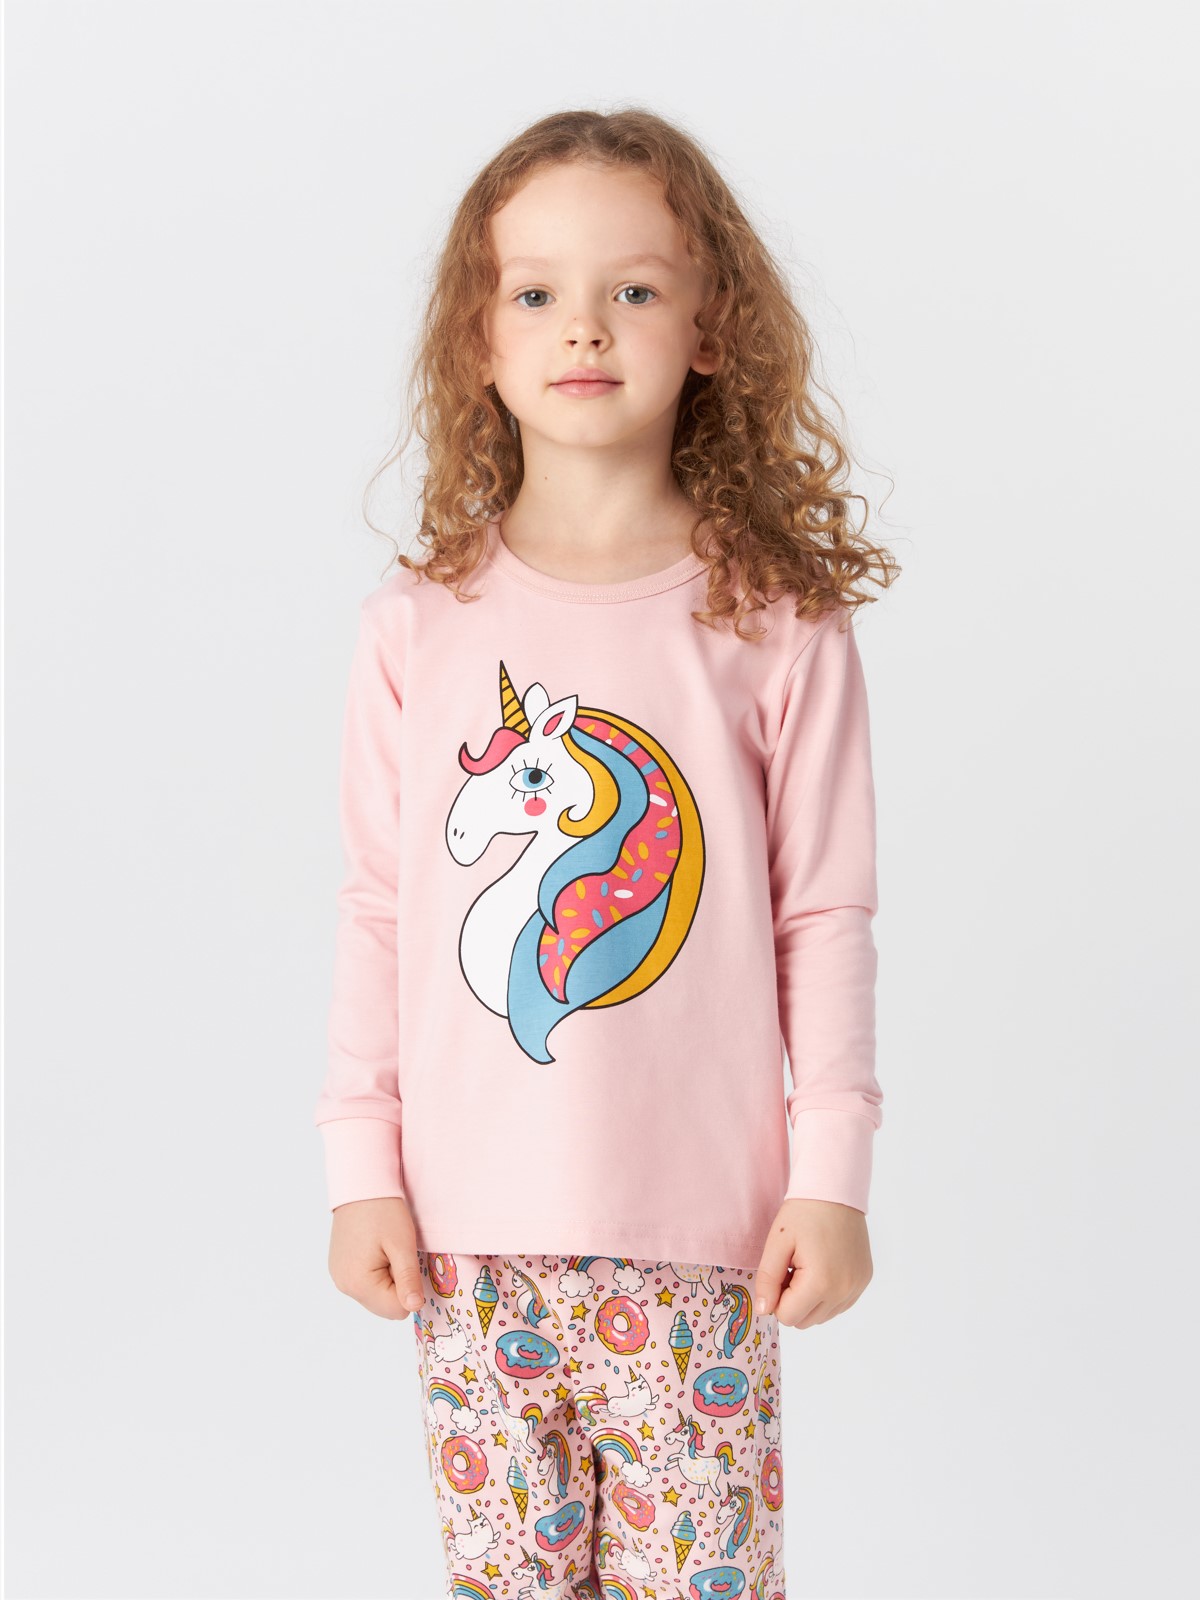 Пижамы для девочек - интернет-магазин детской одежды Happy GaGa